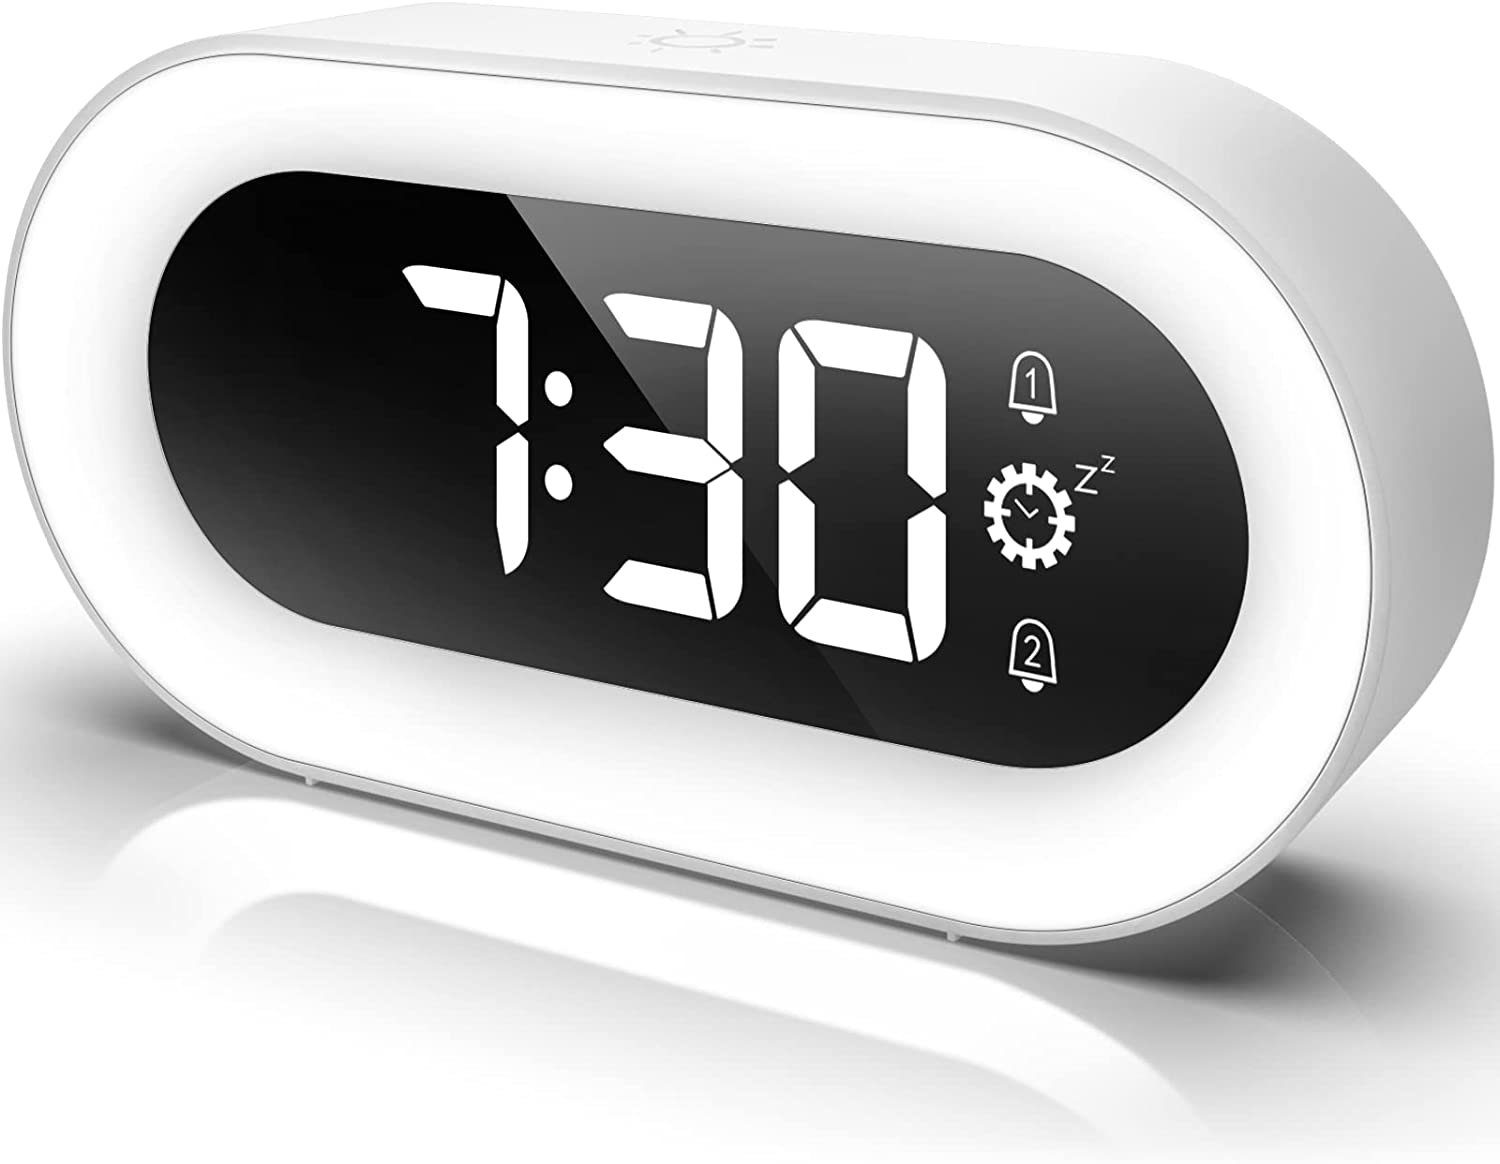 LED Digital Wecker LCD Tischuhr Uhr Kabellos Alarm nachtlicht mit Lautsprecher 